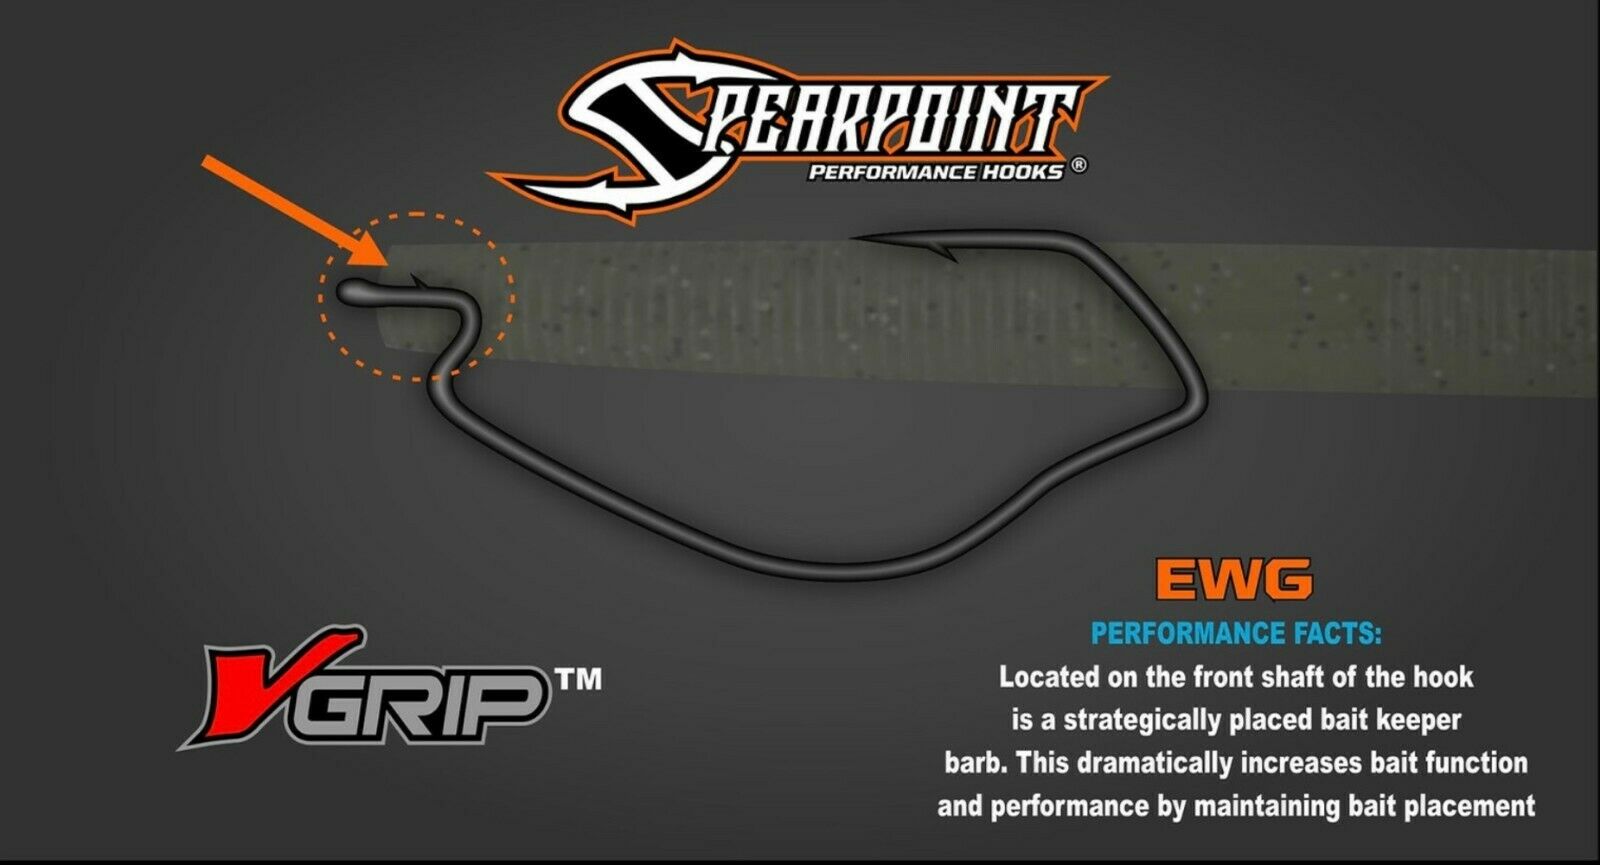 Spearpoint Performance Hooks w/Grip Technology Finesse & EWG